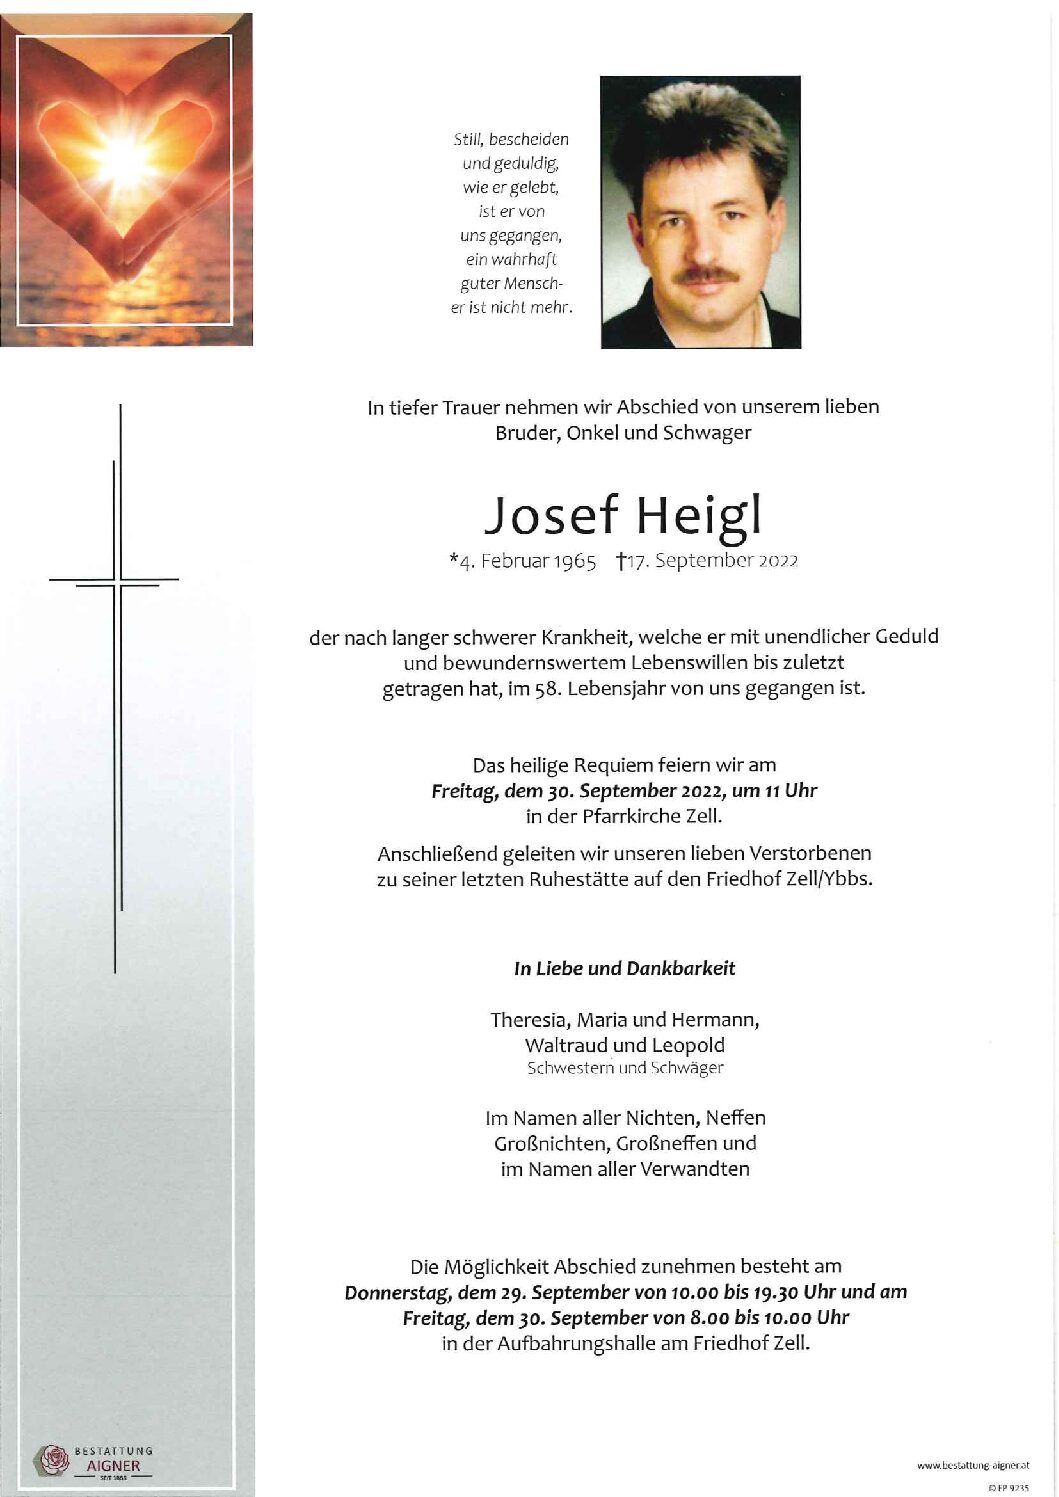 Josef Heigl